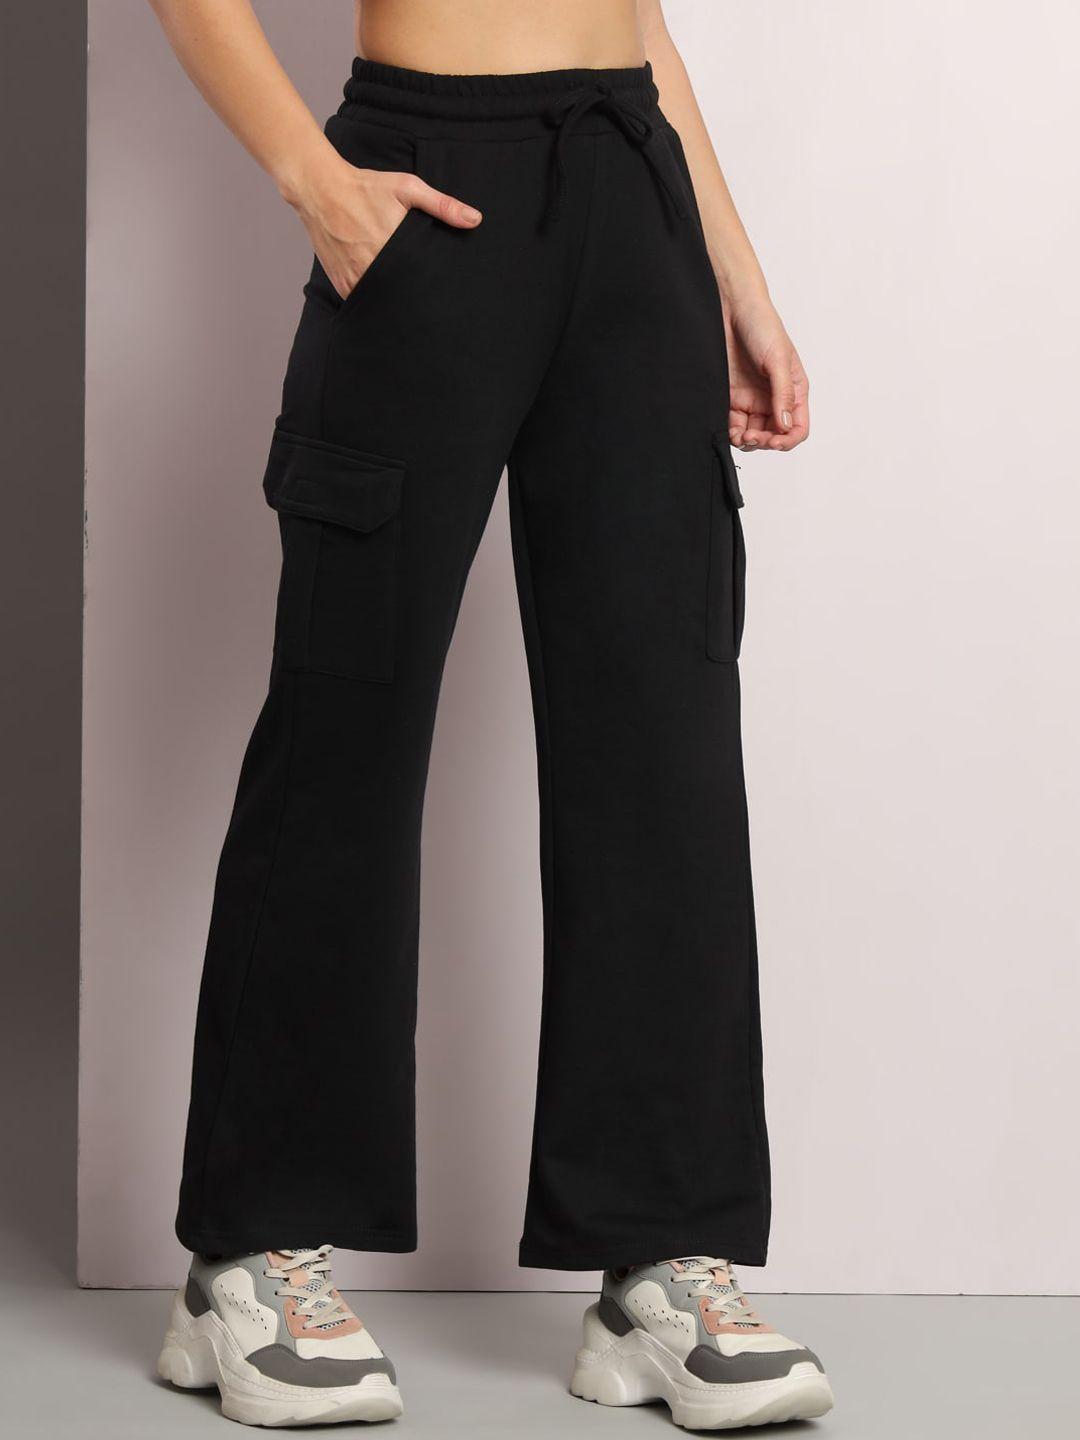 q-rious-women-mid-rise-cotton-track-pants